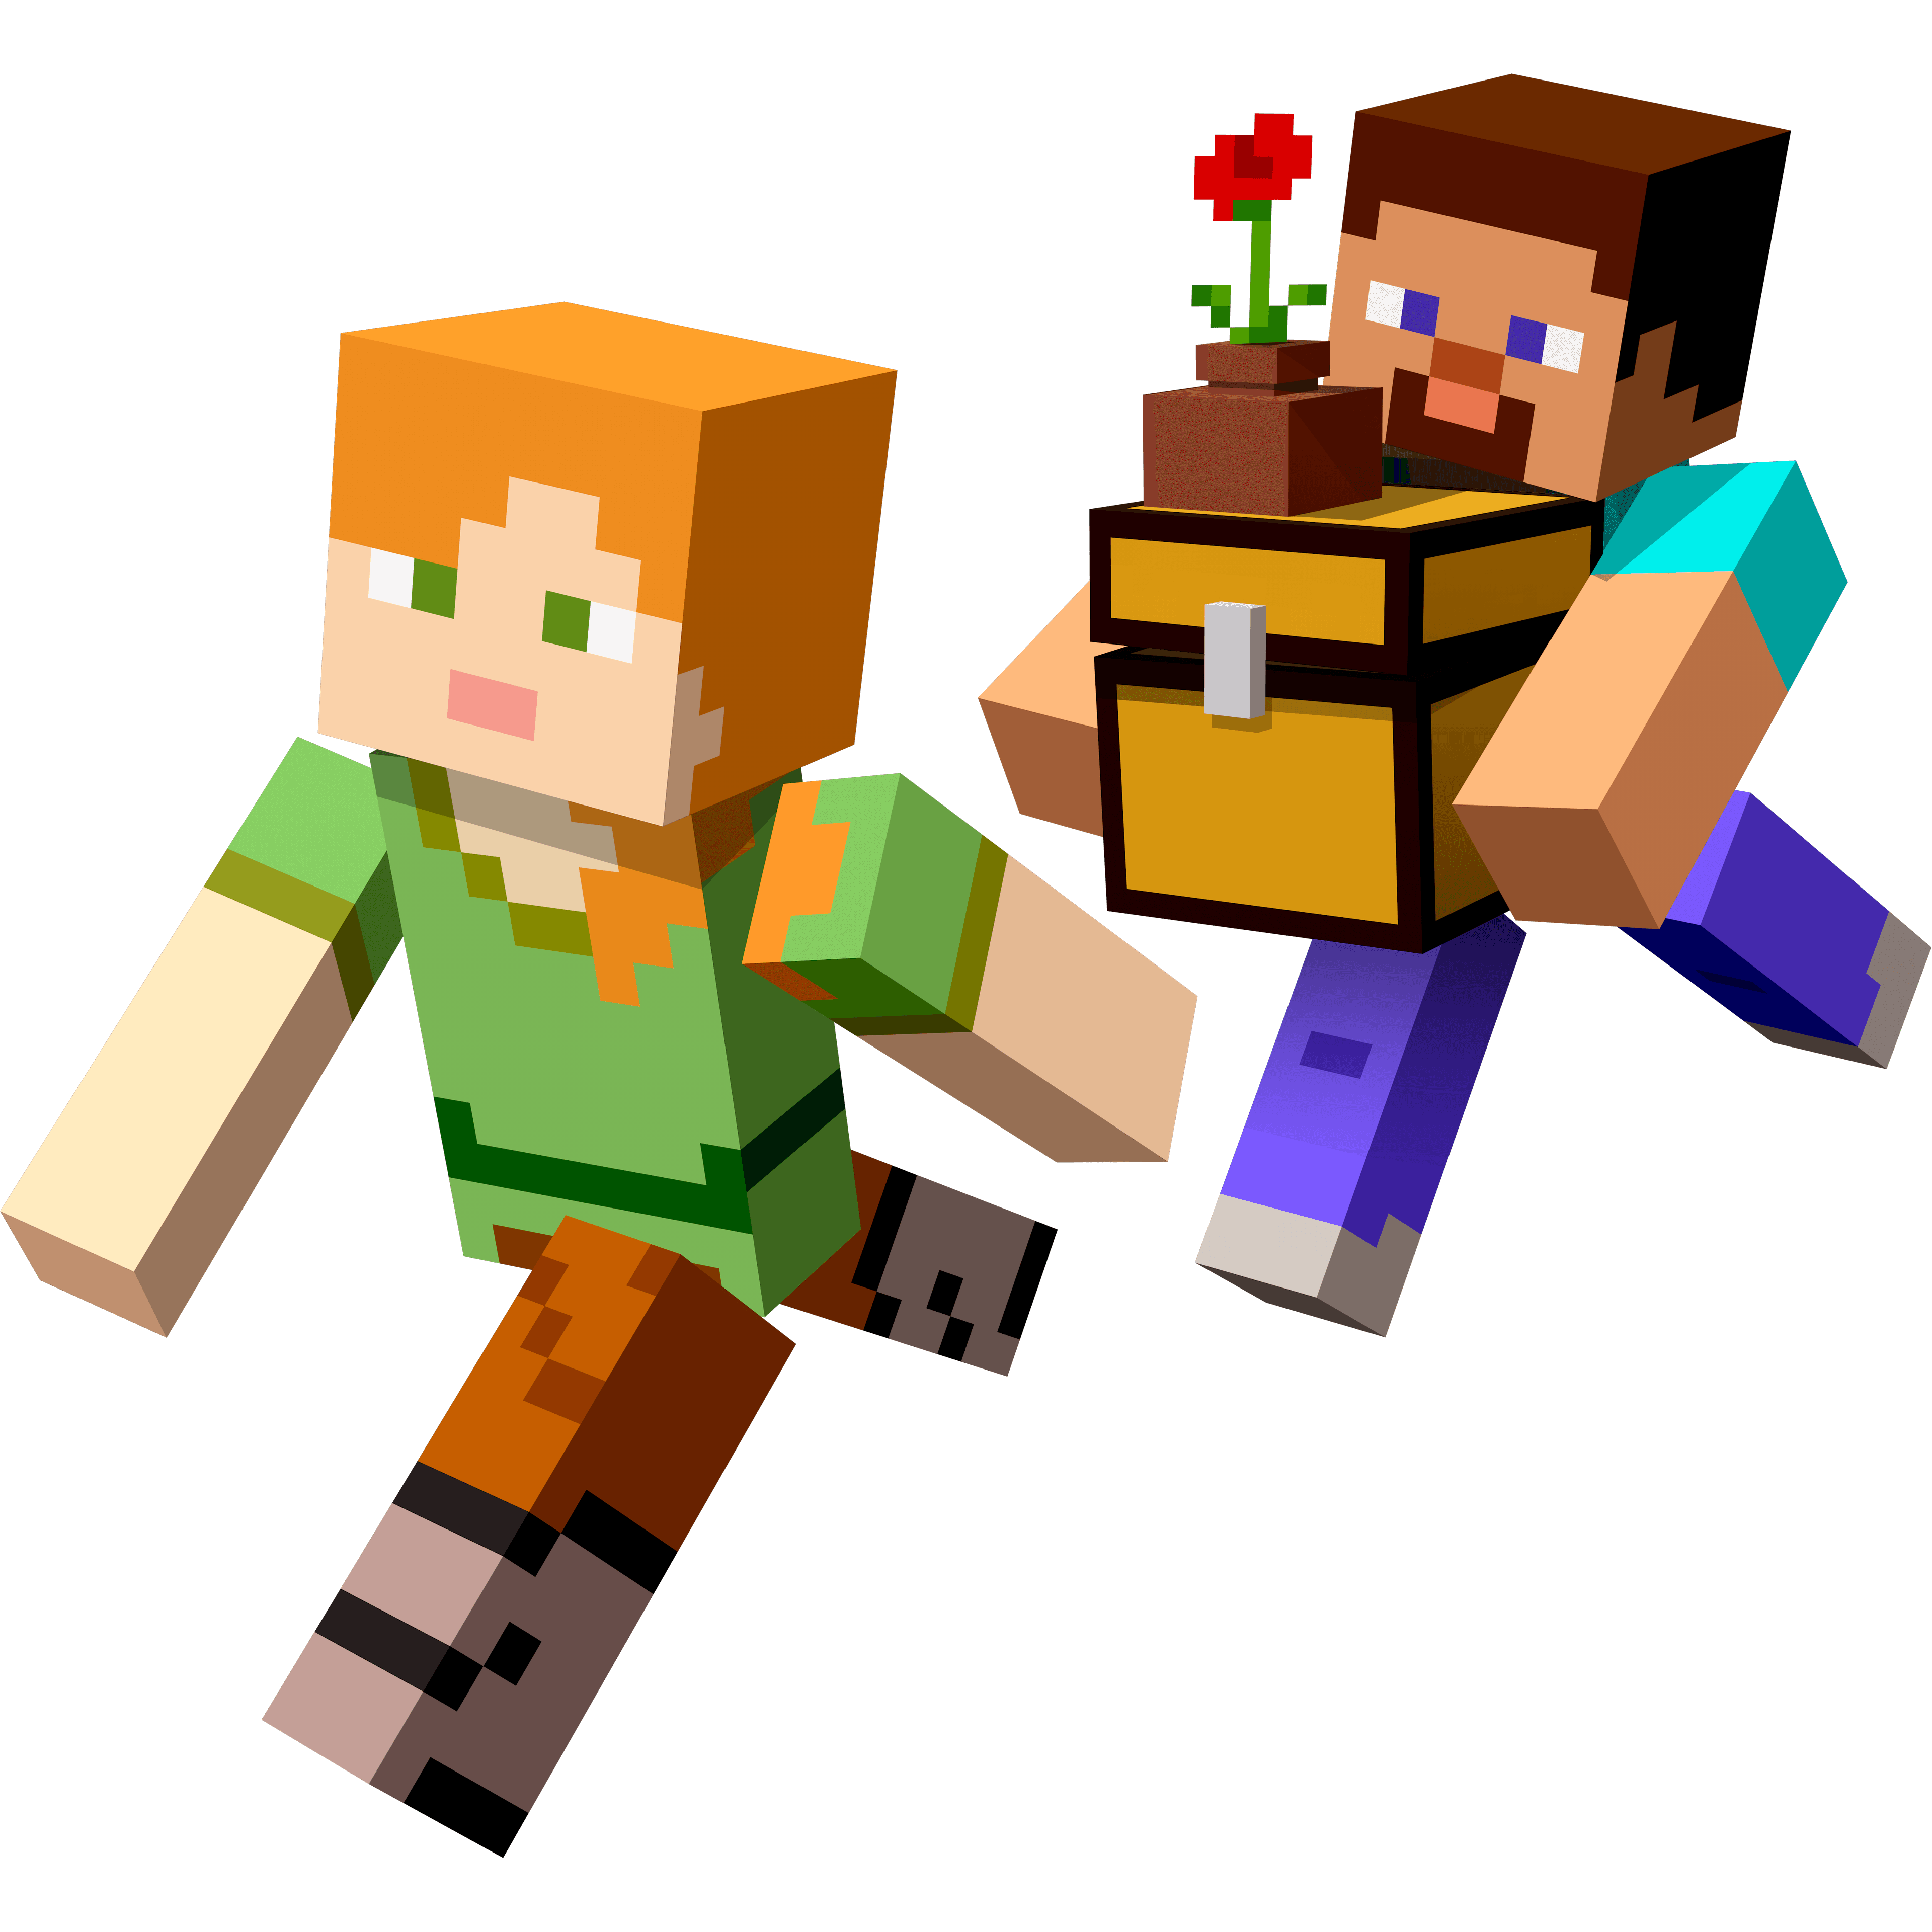 Ілюстрація двох персонажів Minecraft, Алекса та Стіва, з текстурами за замовчуванням, один з яких тримає відкриту скриню з квітковим горщиком на ньому